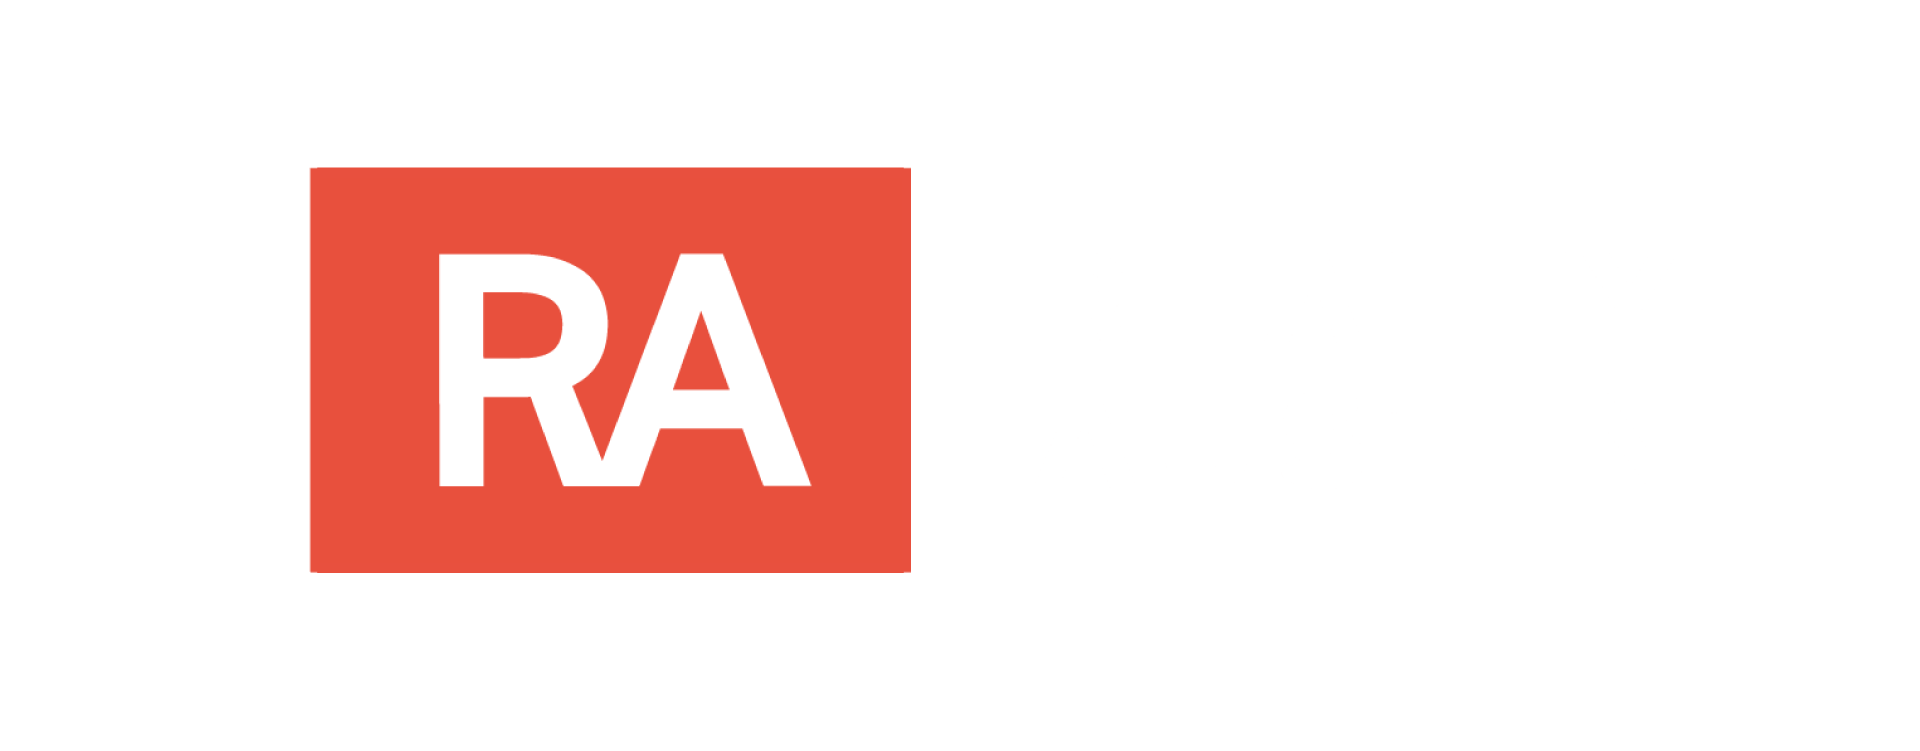 Realty-Austin-White